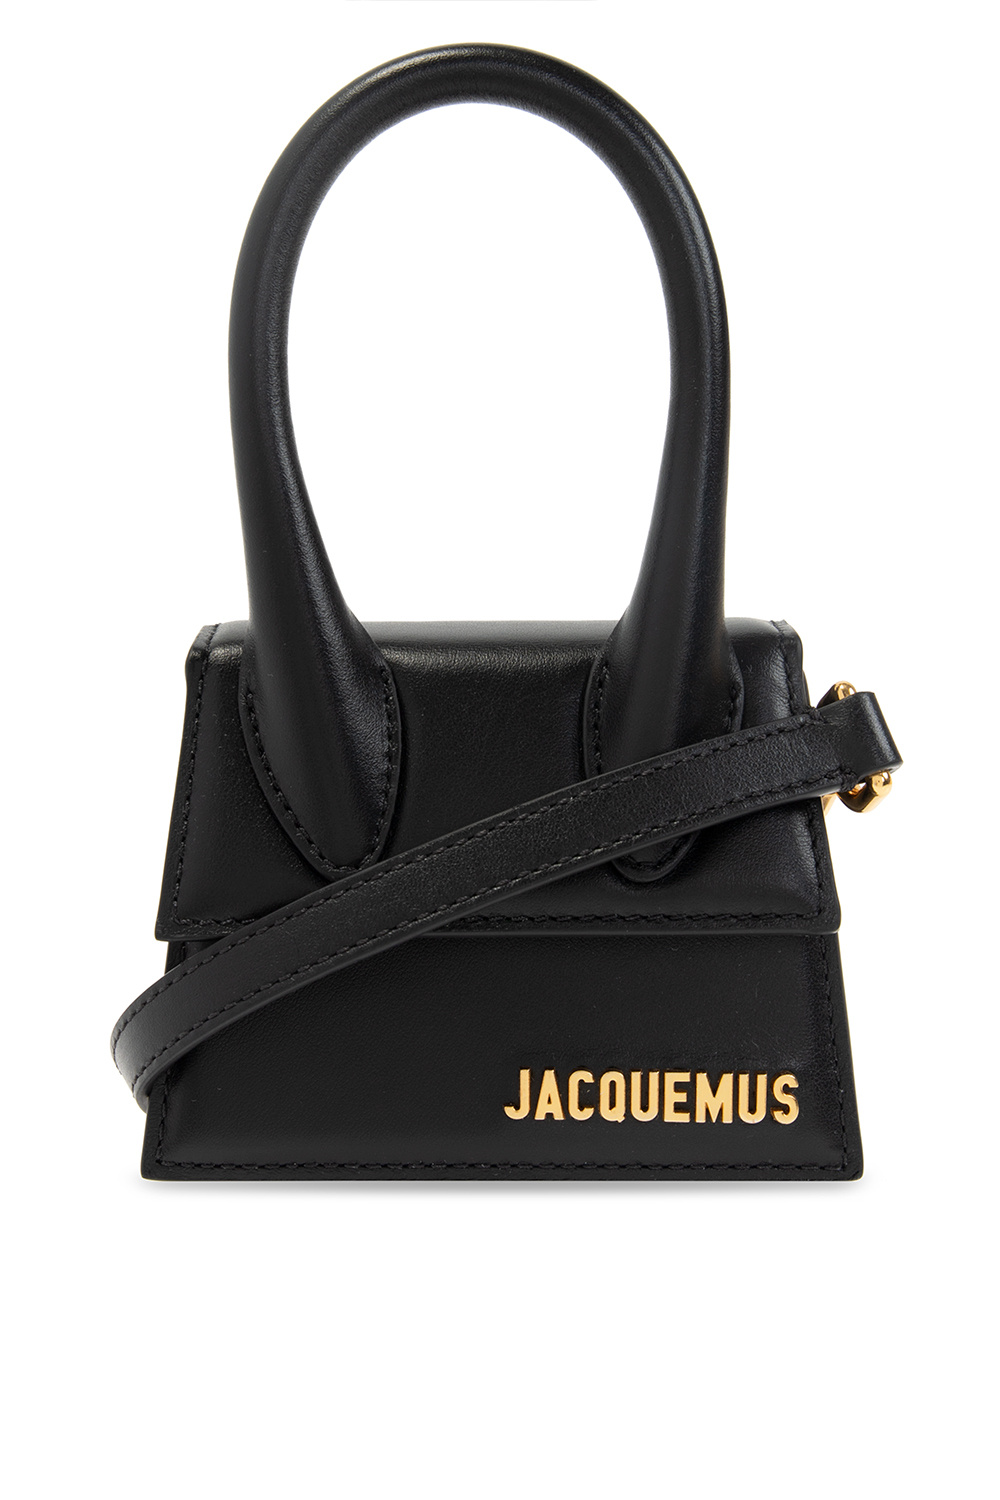 Jacquemus ‘Le Chiquito’ shoulder Textured bag